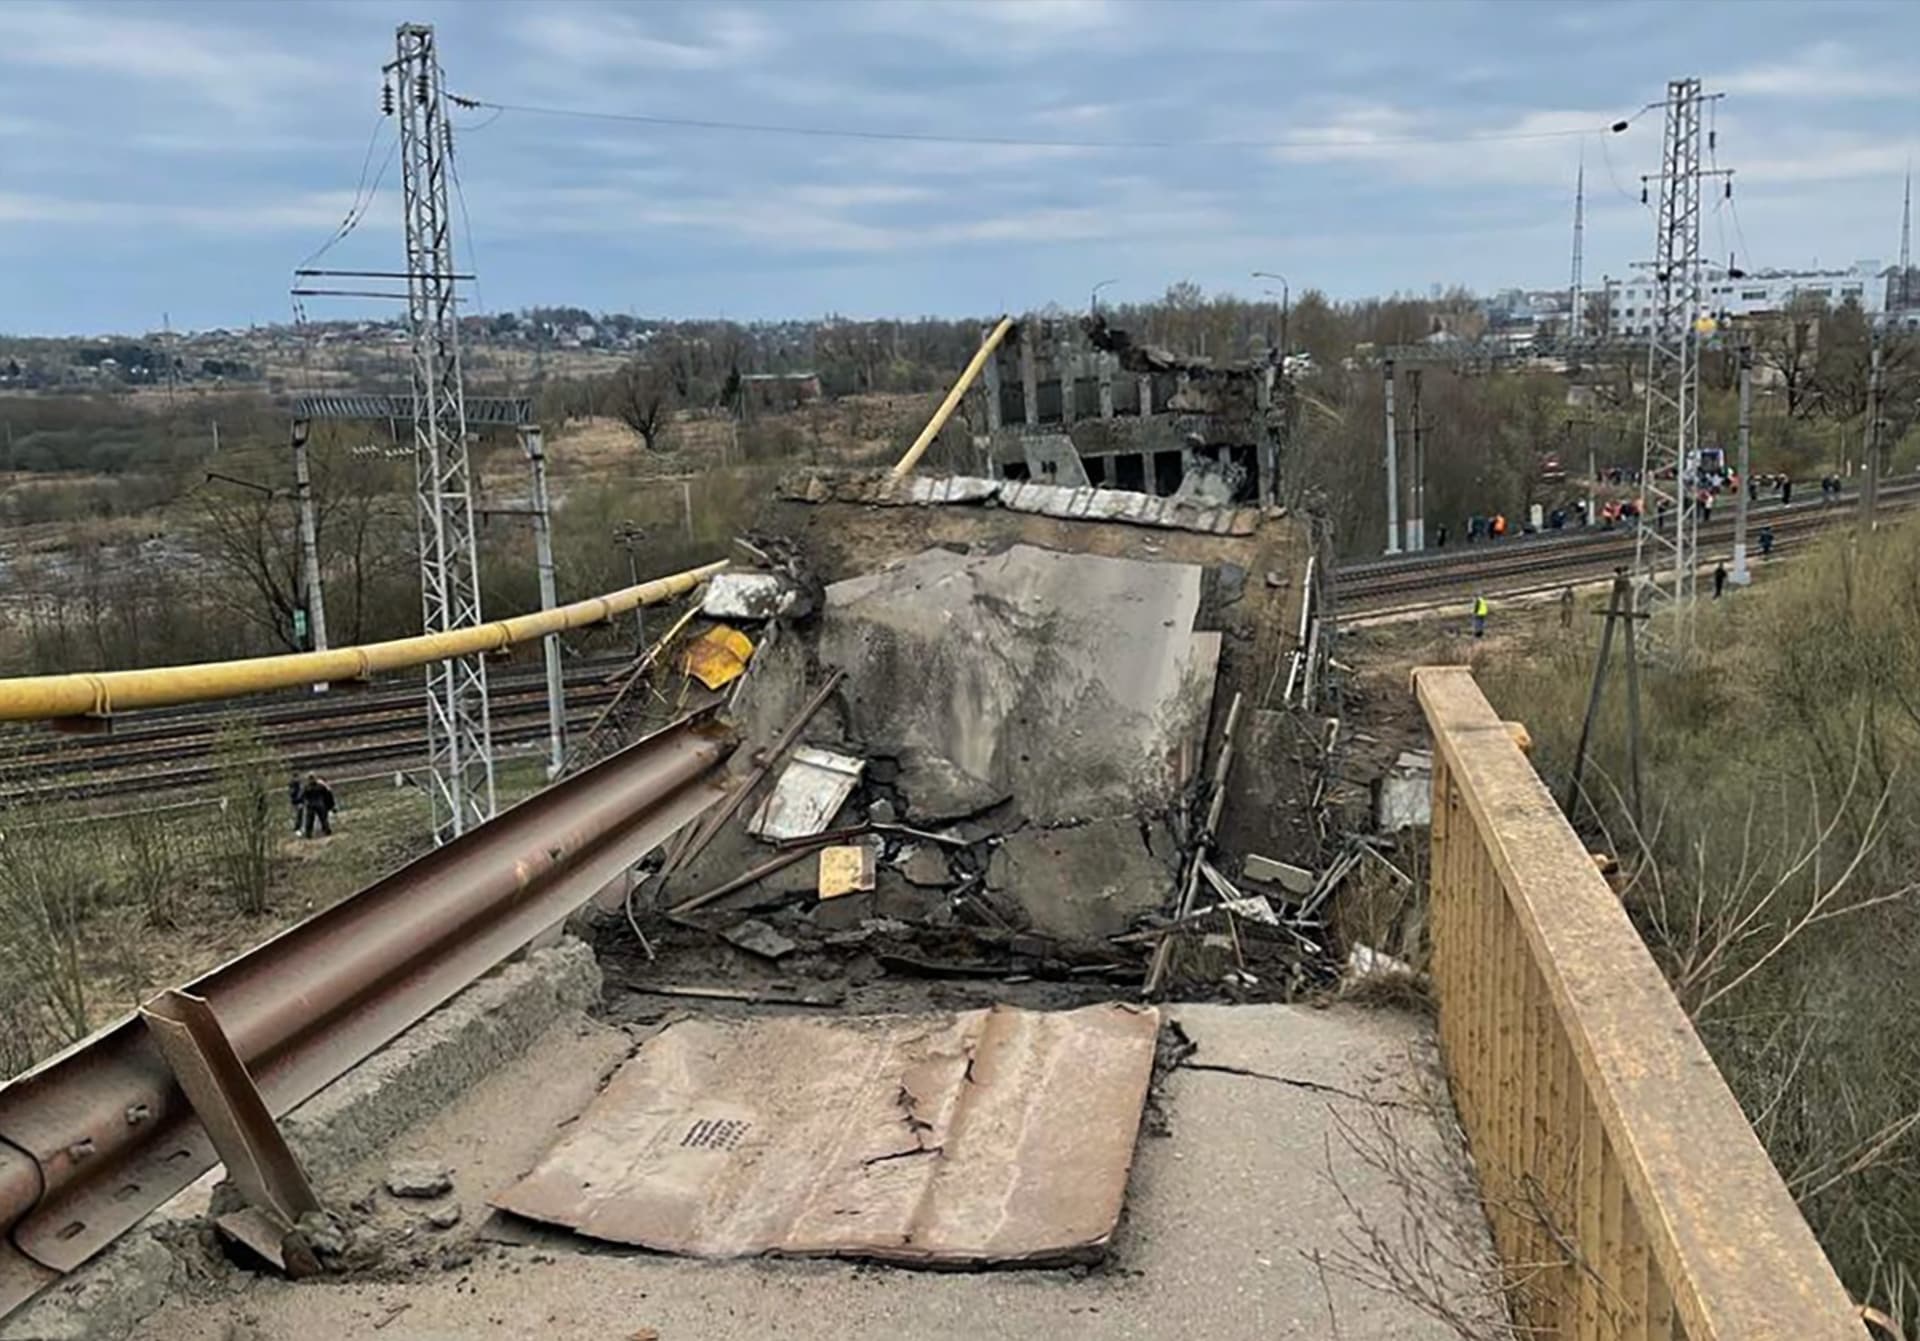 Ve městě Vjazma ve Smolenské oblasti v Rusku se část mostu zřítila právě ve chvíli, kdy po něm přejíždělo osobní auto a kamion. 